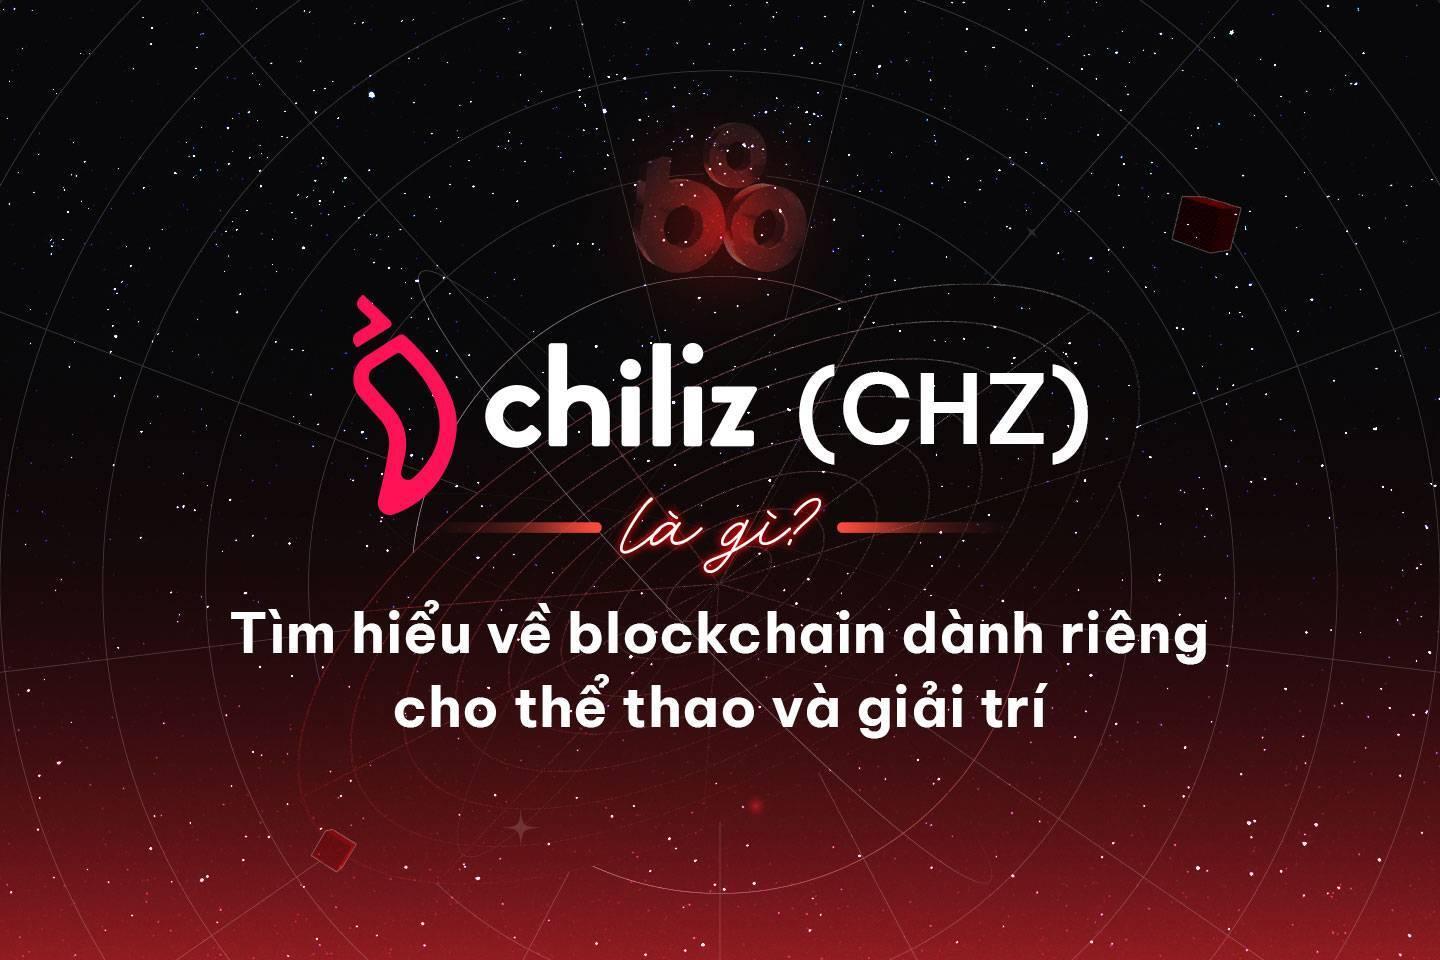 chiliz-chz-la-gi-tim-hieu-ve-du-an-blockchain-danh-rieng-cho-the-thao-va-giai-tri